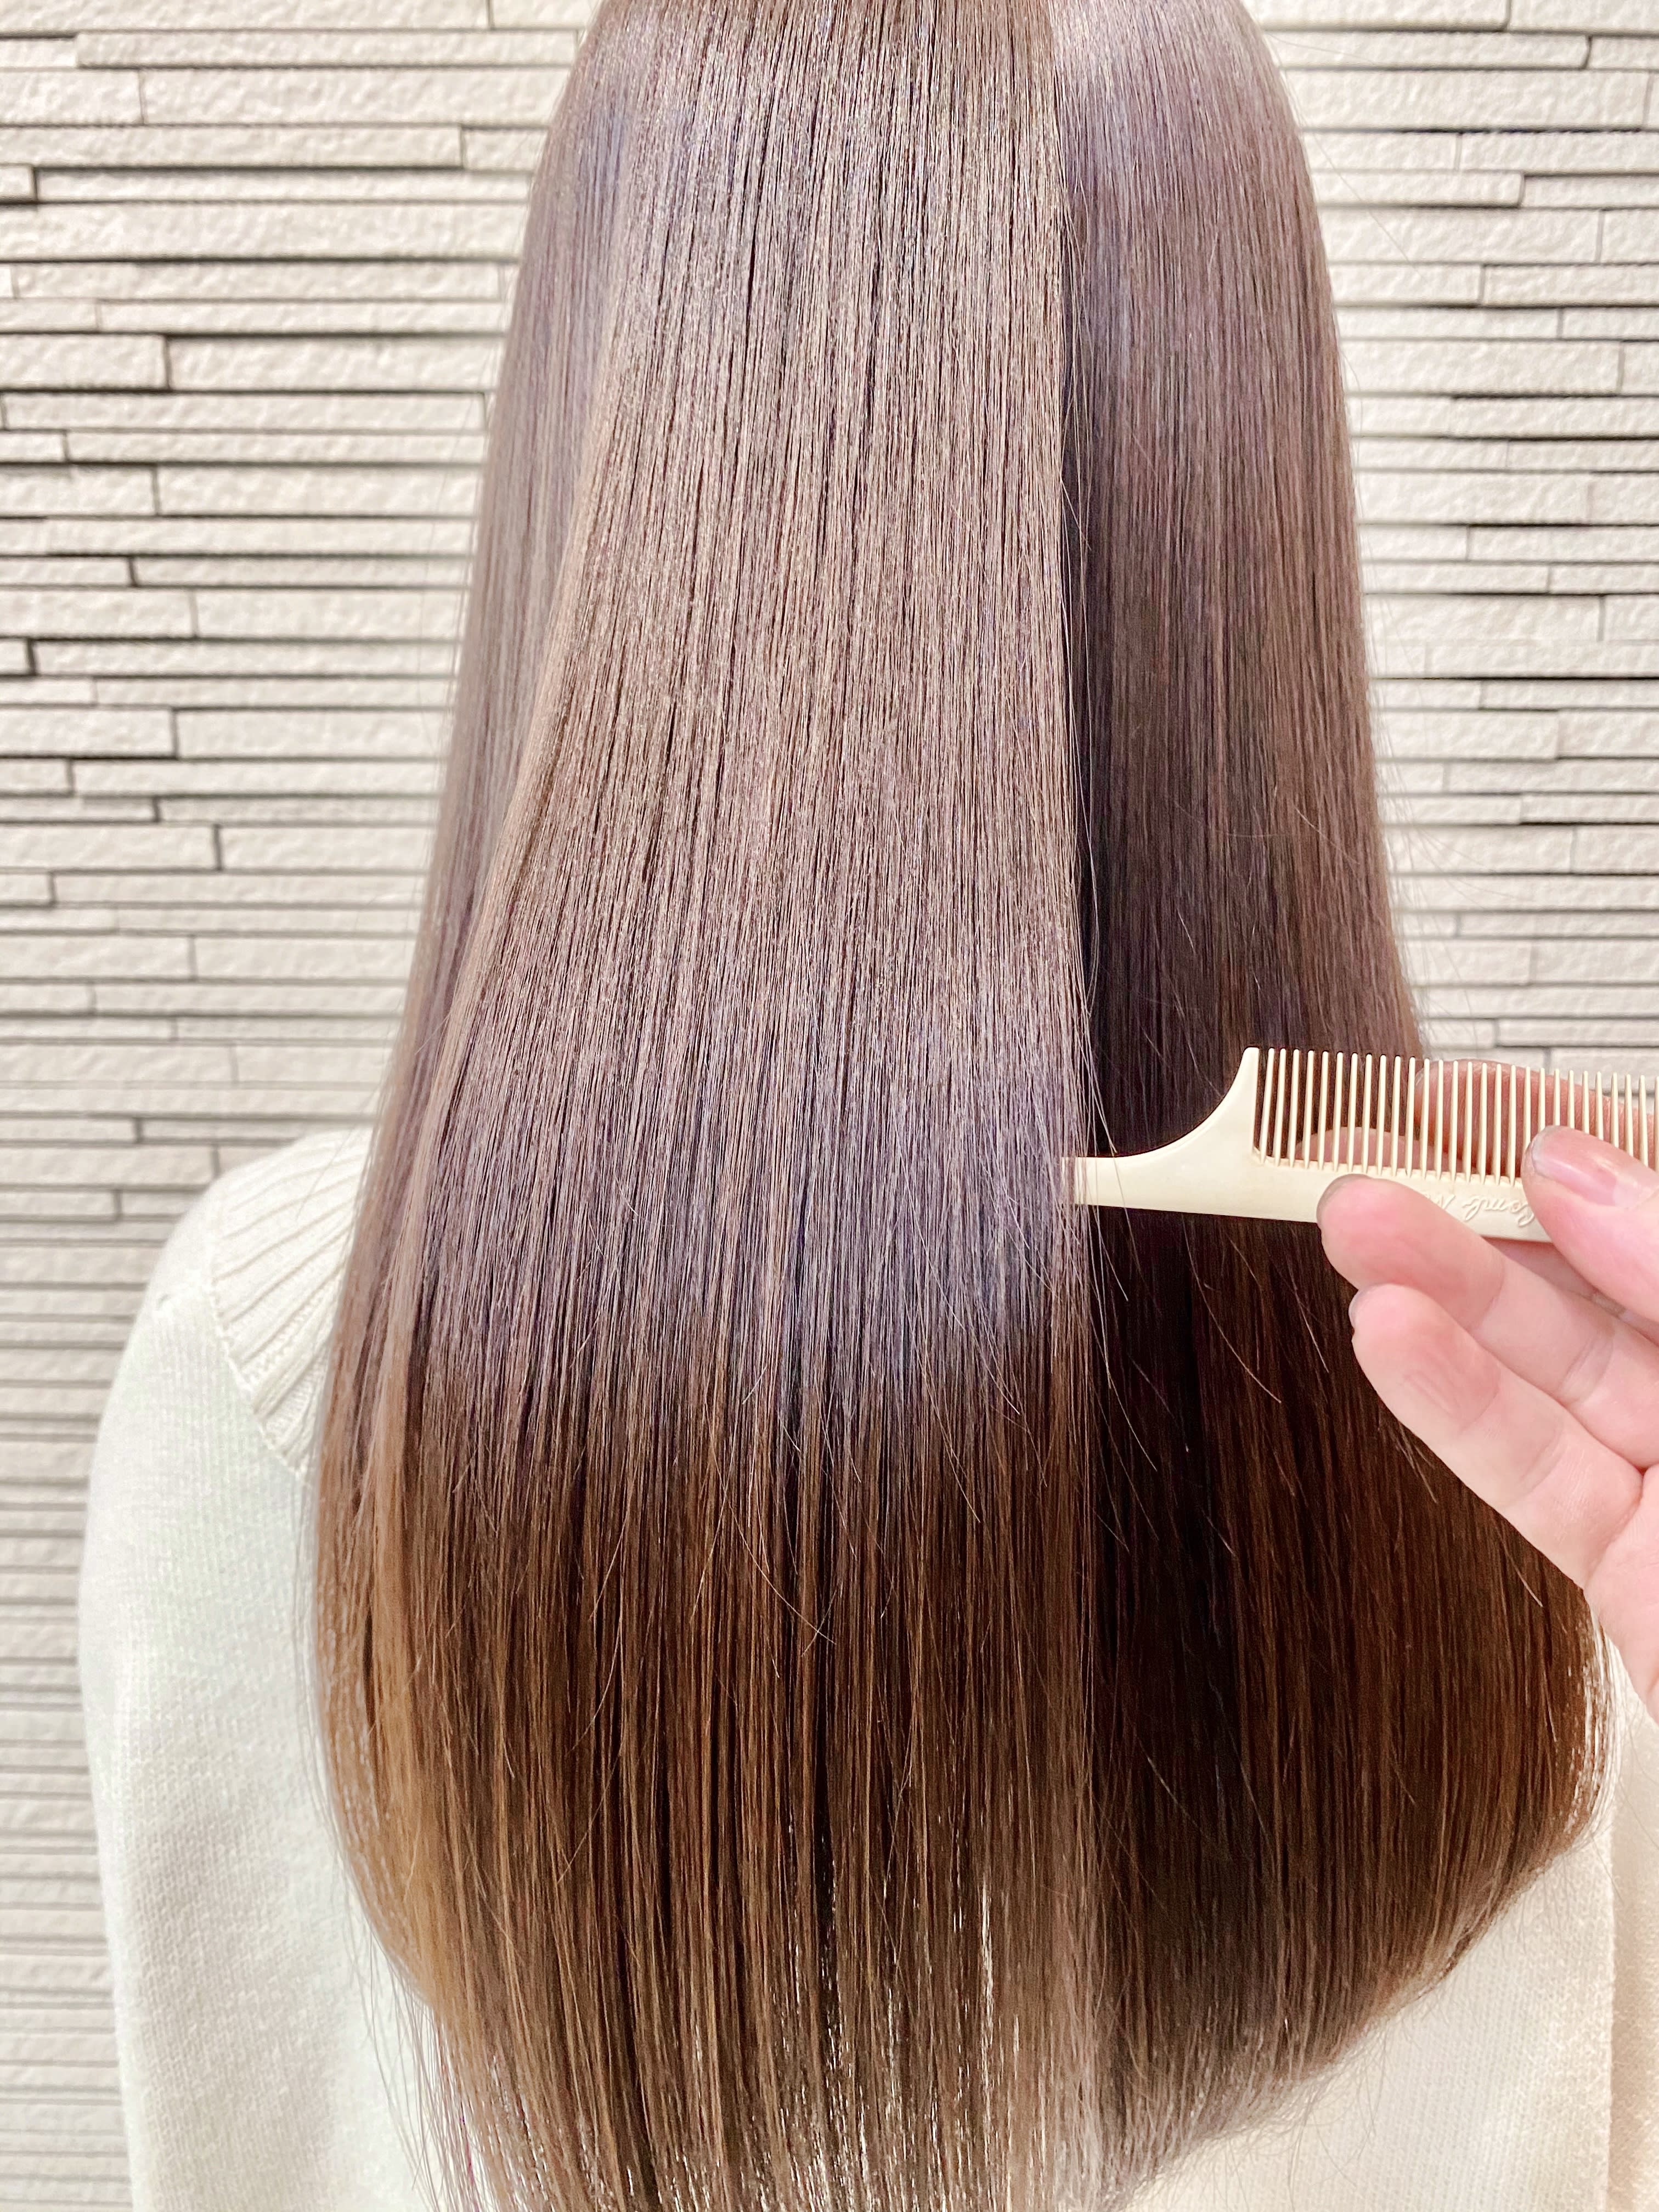 Tint make&hair【ティント メイクアンドヘア】のスタイル紹介。髪質改善アンヘルトリートメント